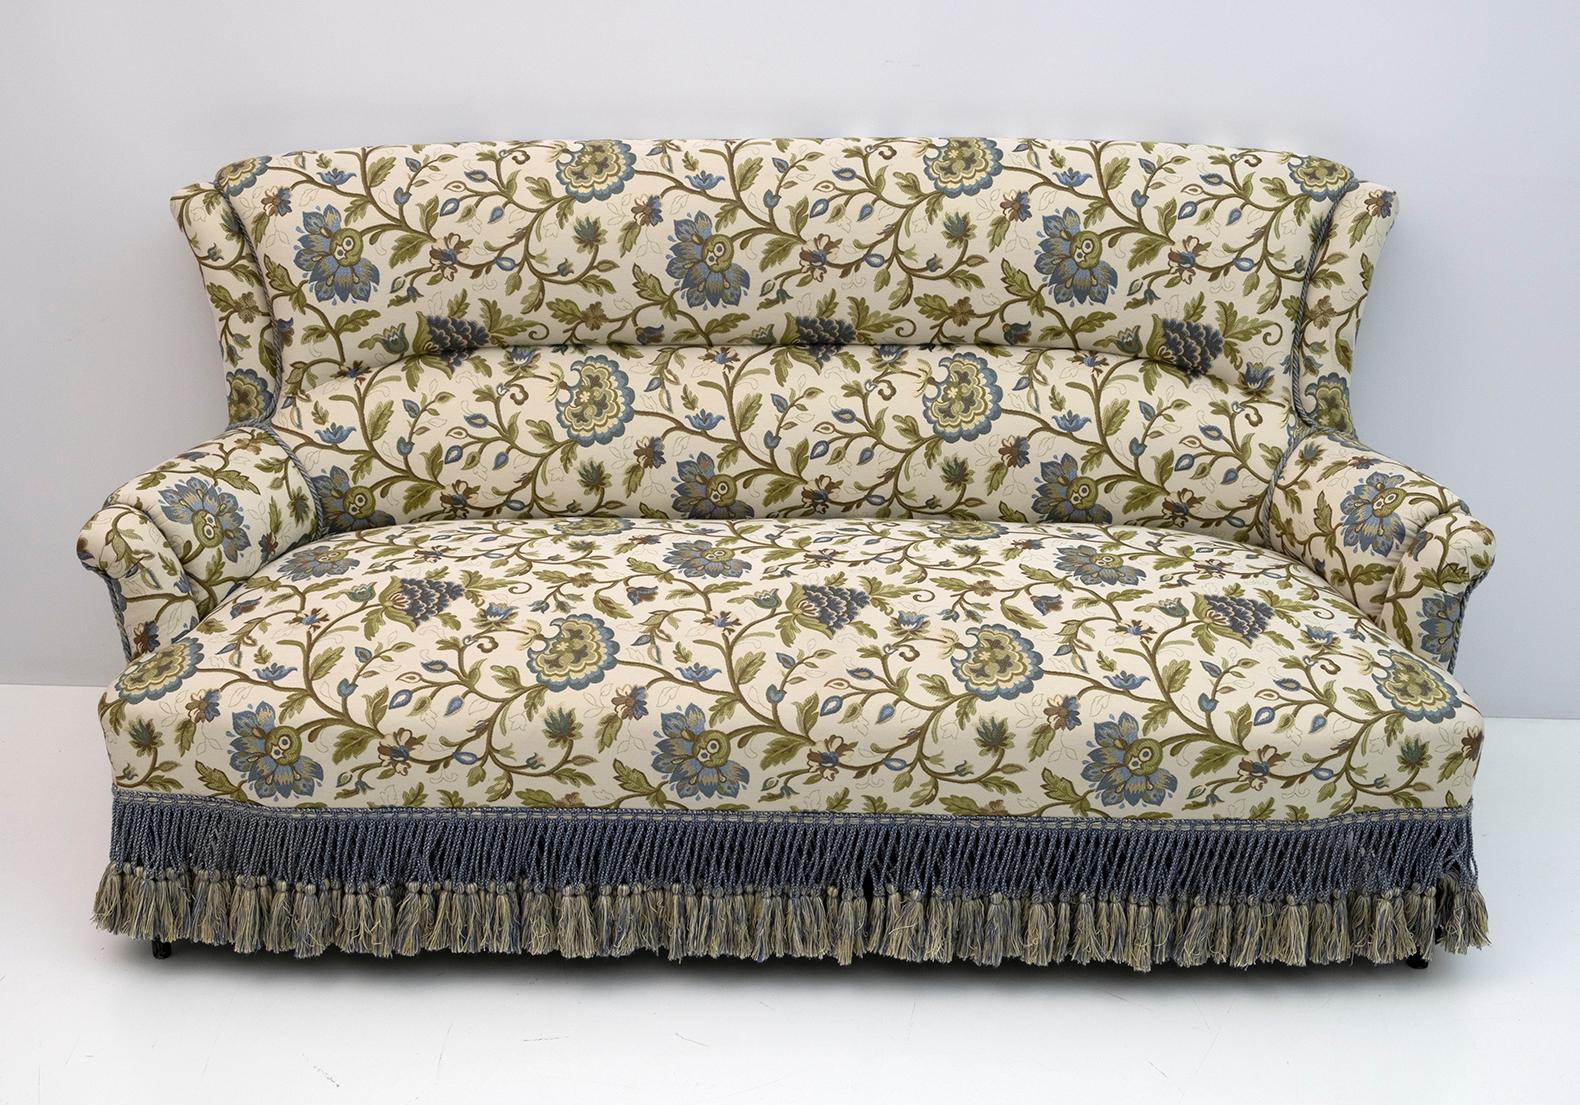 Canapé français du XIXe siècle, période Napoléon III. Le canapé a été restauré et la tapisserie a été remplacée par un magnifique brocart italien. France, 1870.